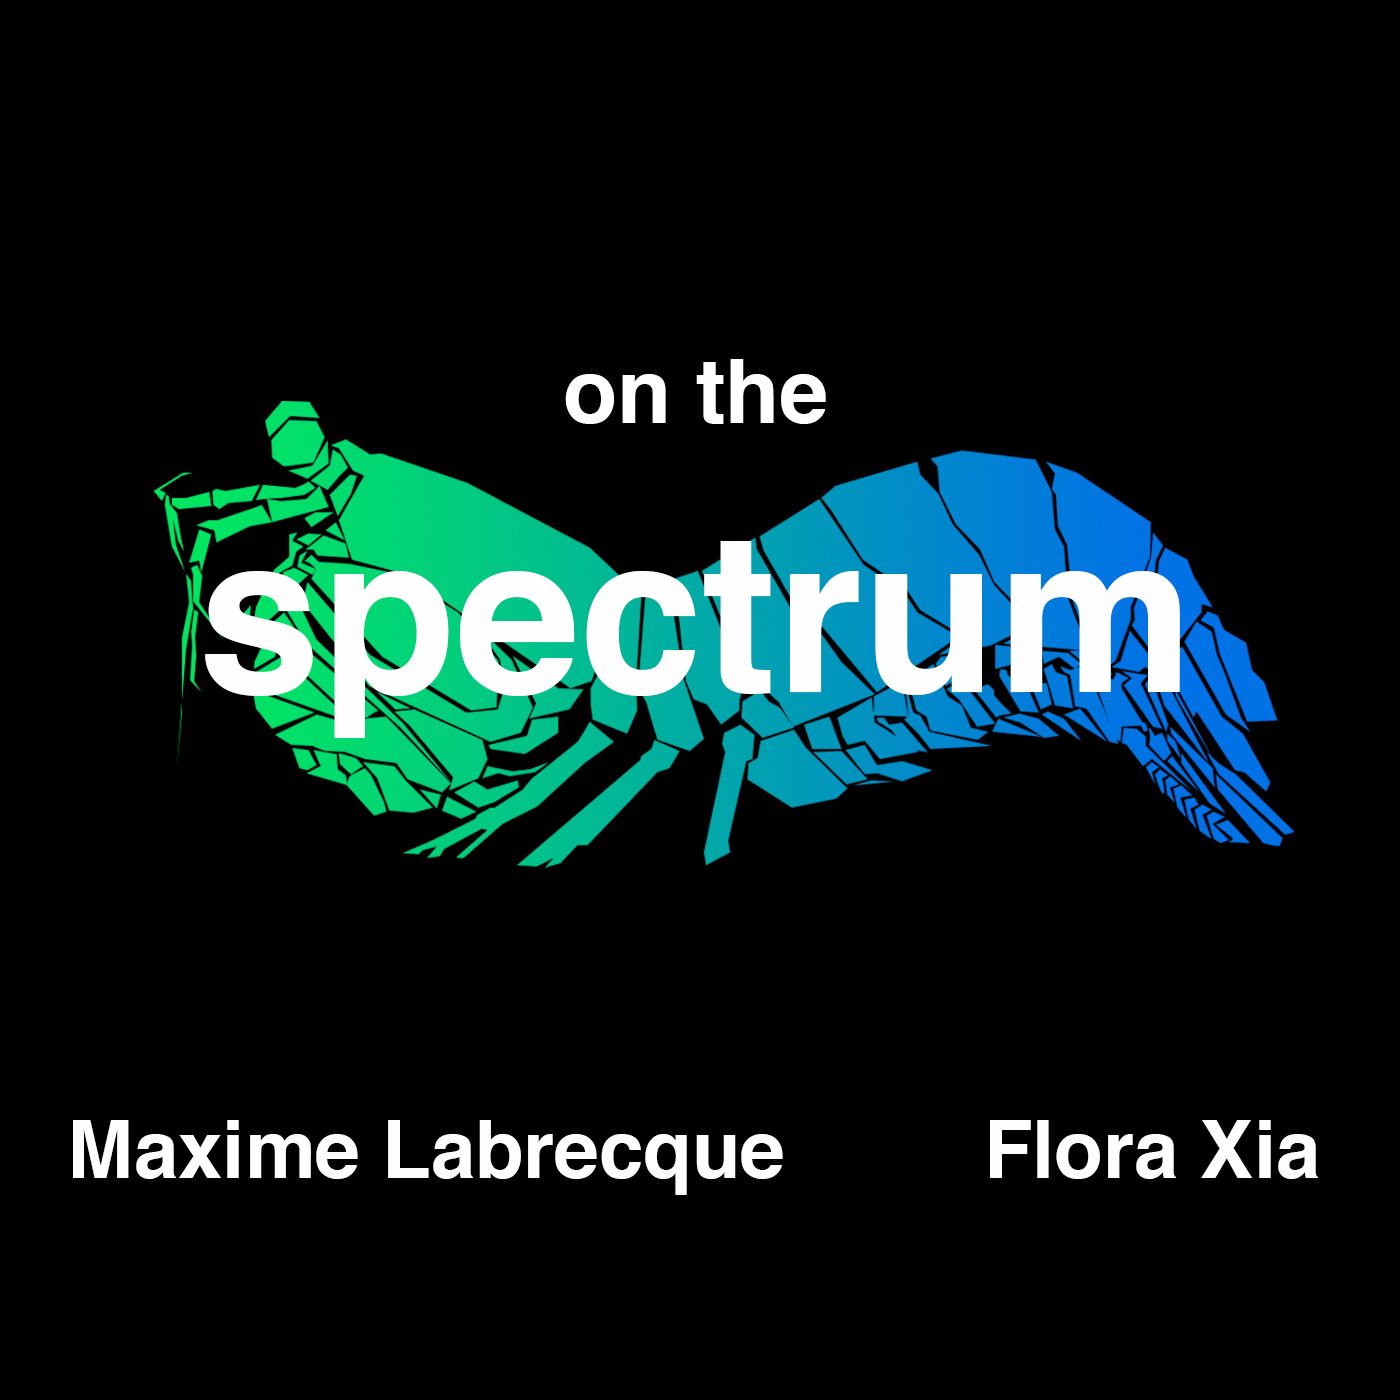 On The Spectrum